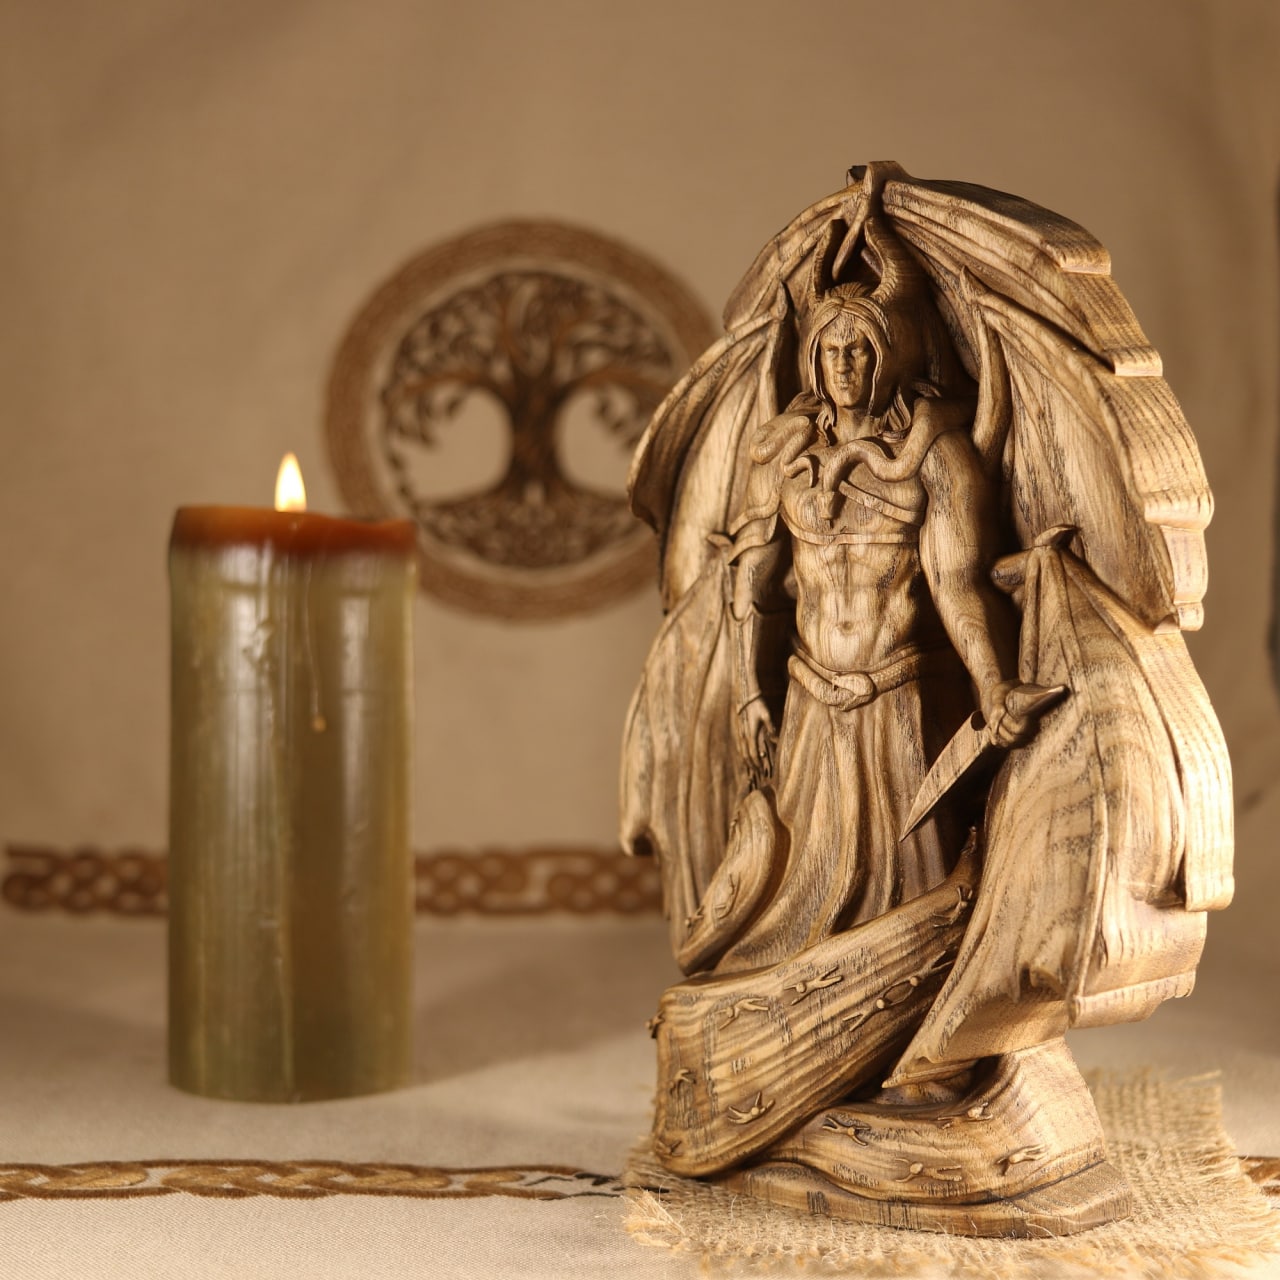 Samael, Lucifer morningstar,  Wooden statue